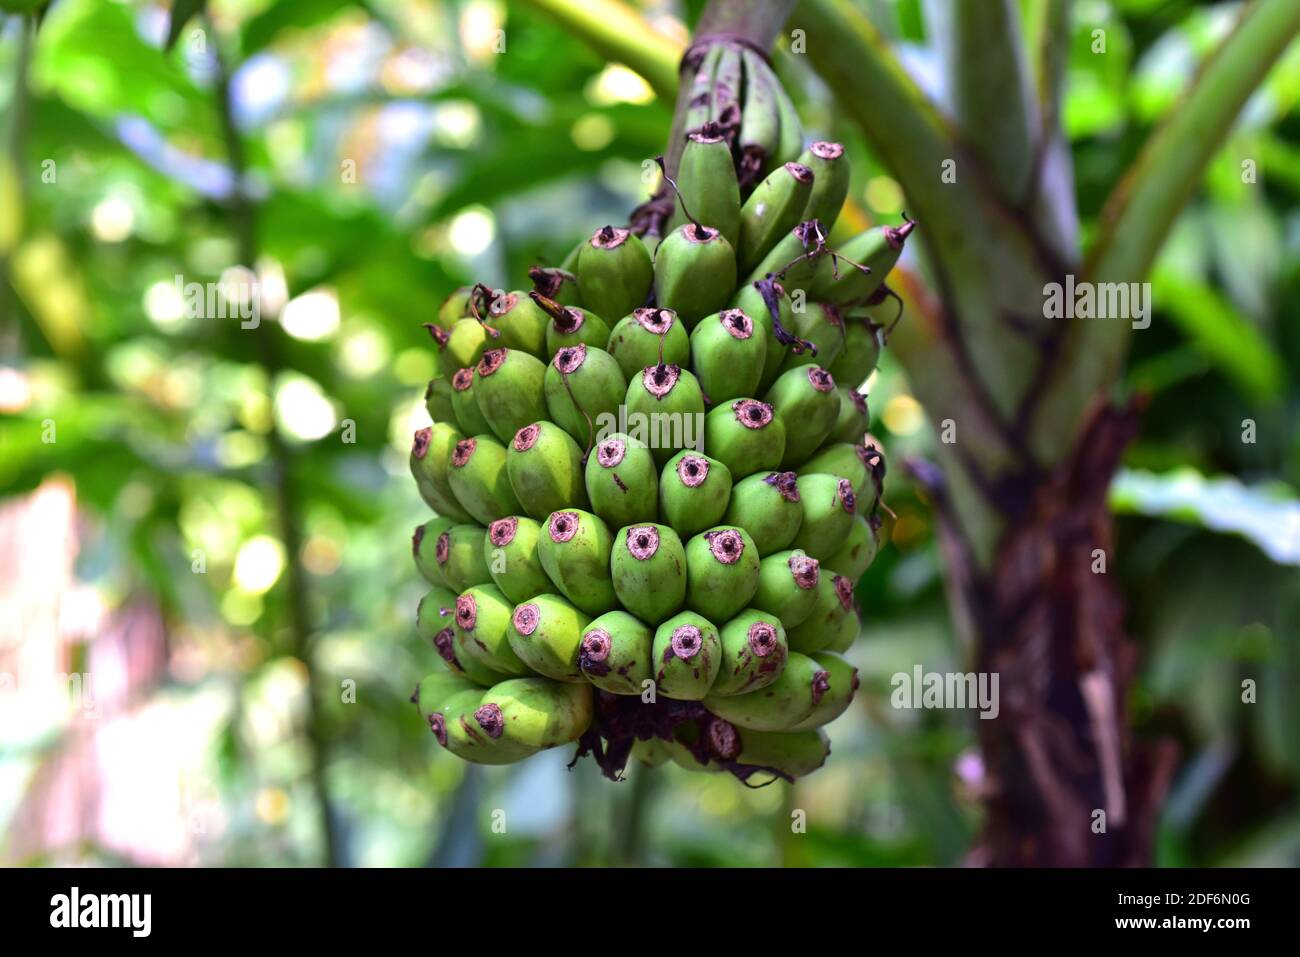 La banana malese (Musa acuminata) è un'erba perenne originaria del sud-est asiatico. I suoi frutti (dettaglio) sono commestibili. Foto Stock